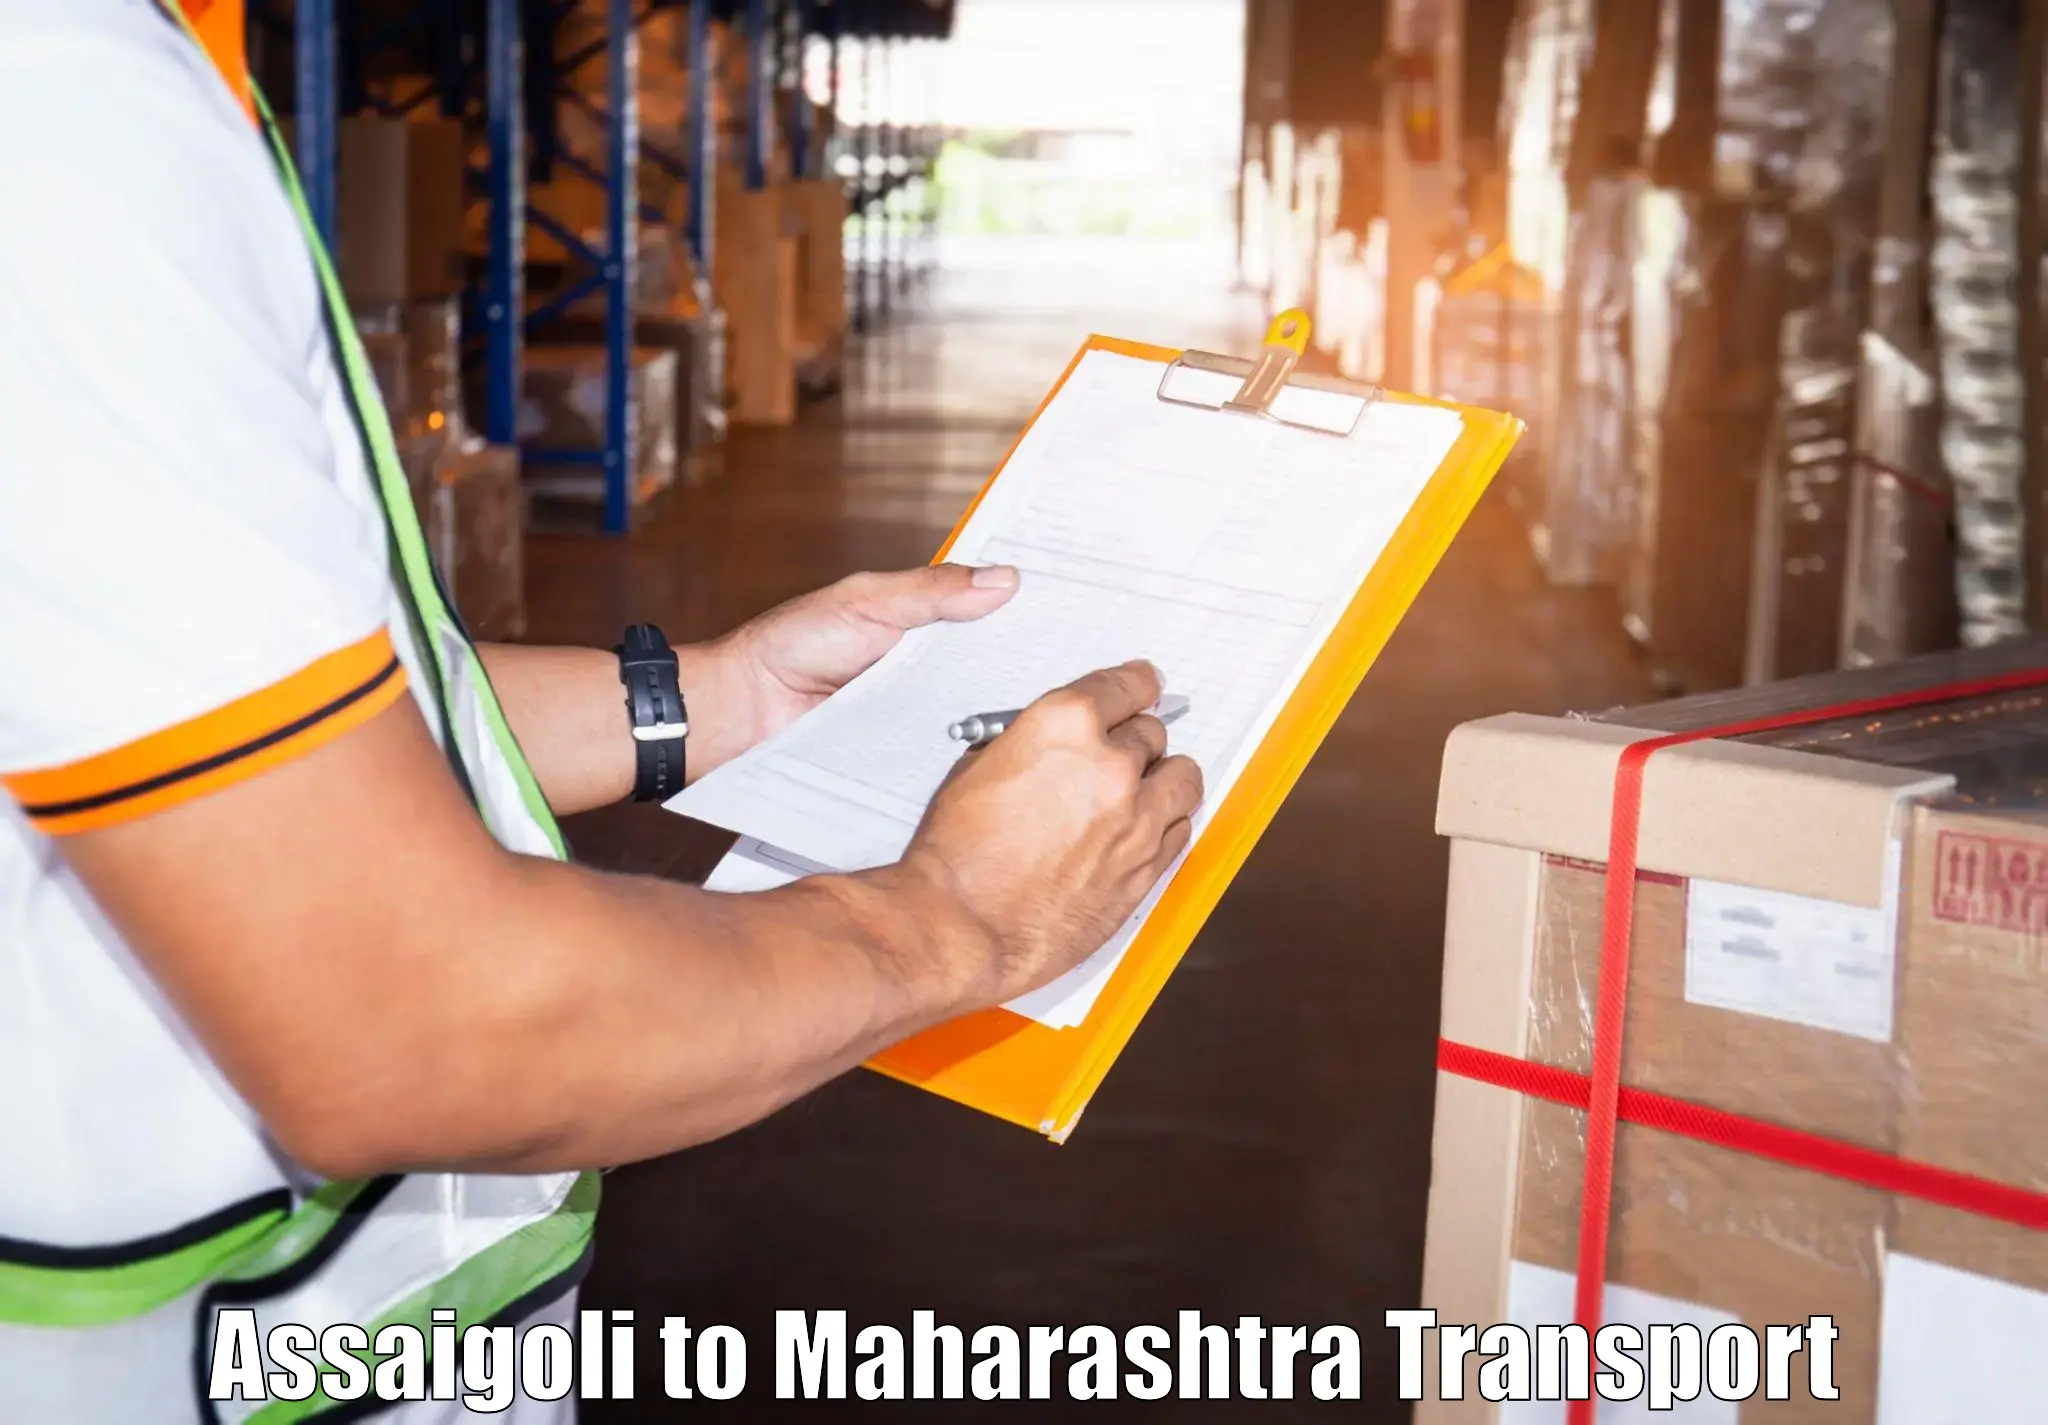 Truck transport companies in India Assaigoli to Borivali